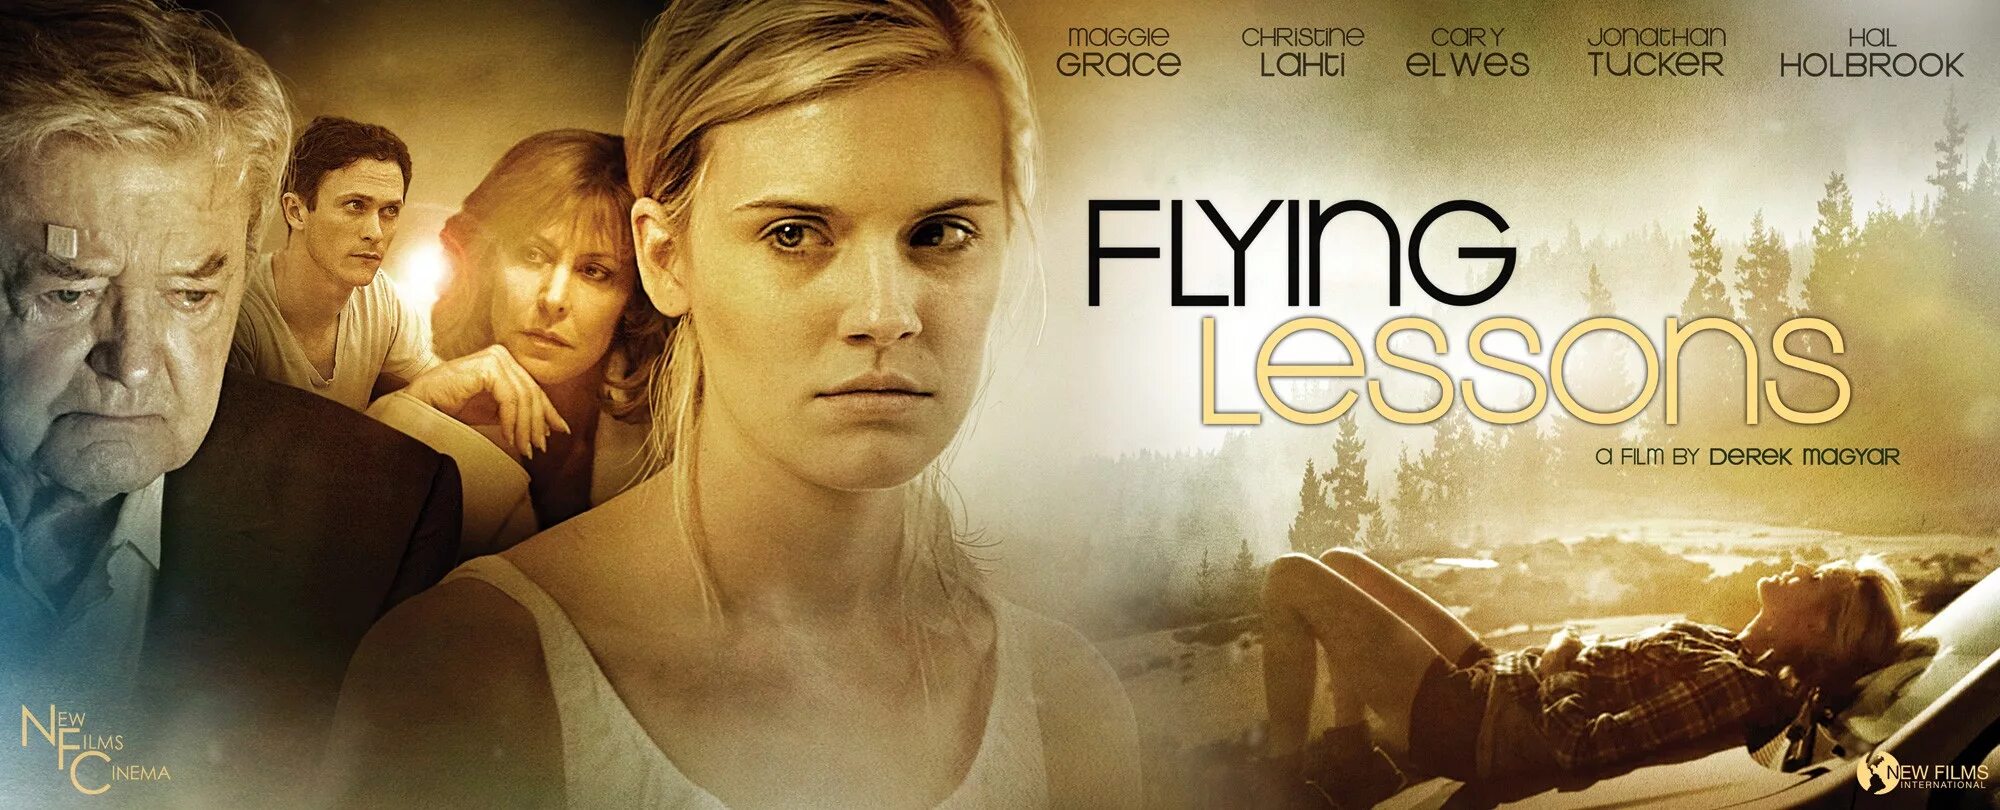 Flying lesson. Мэгги Грейс Flying Lessons. Уроки полёта (2007).